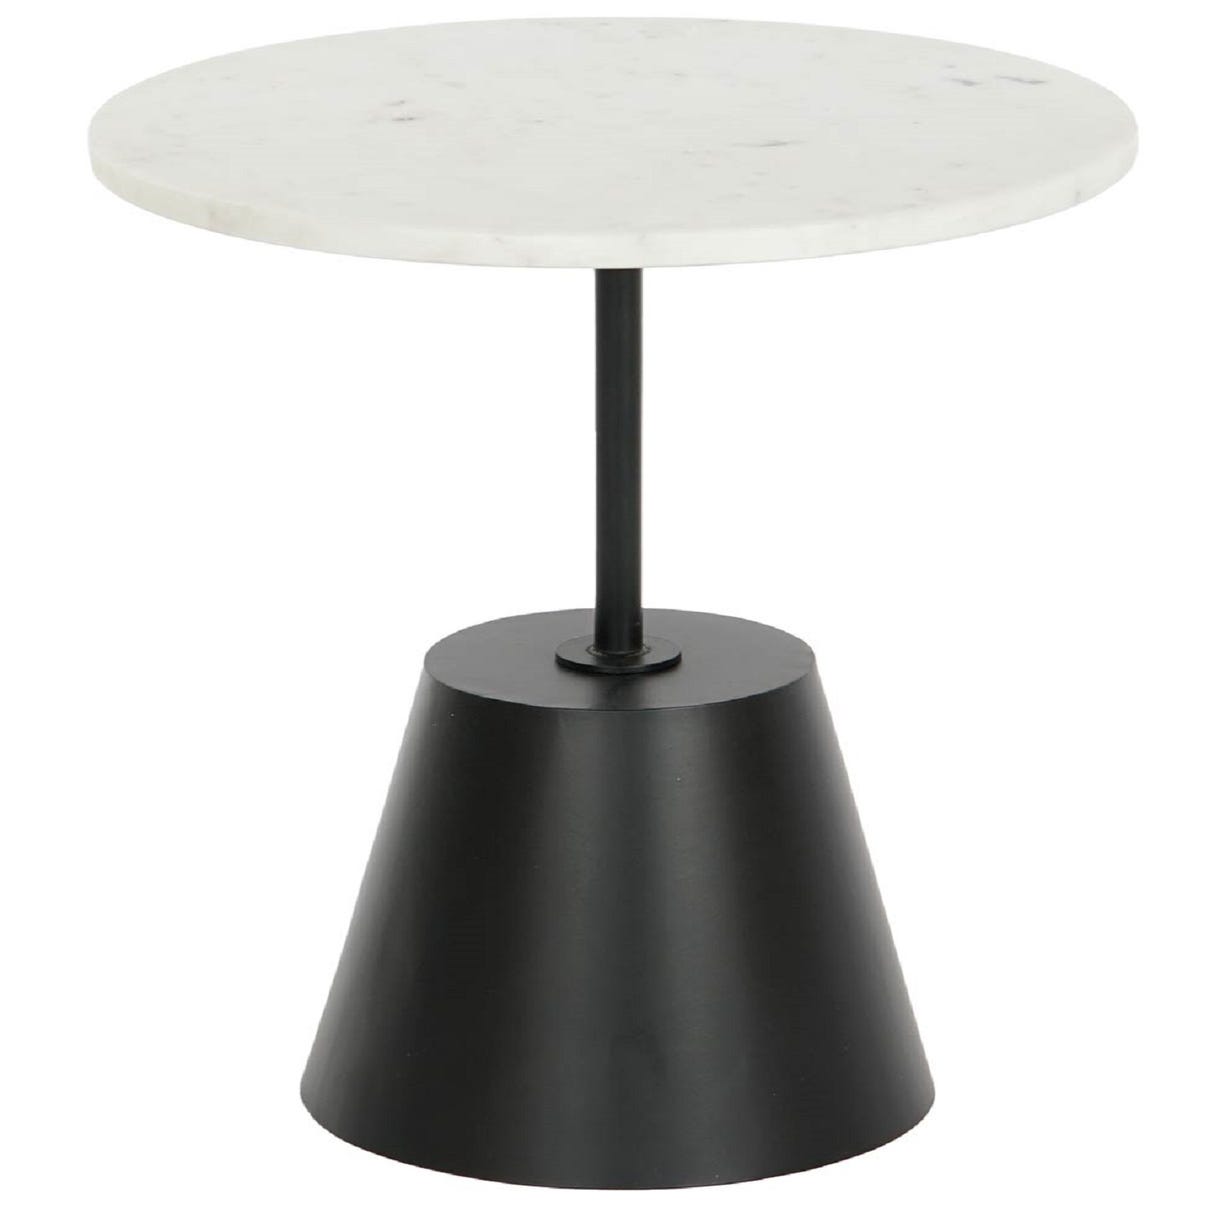 Table d'appoint ronde en métal noir et marbre blanc - Diamètre 40